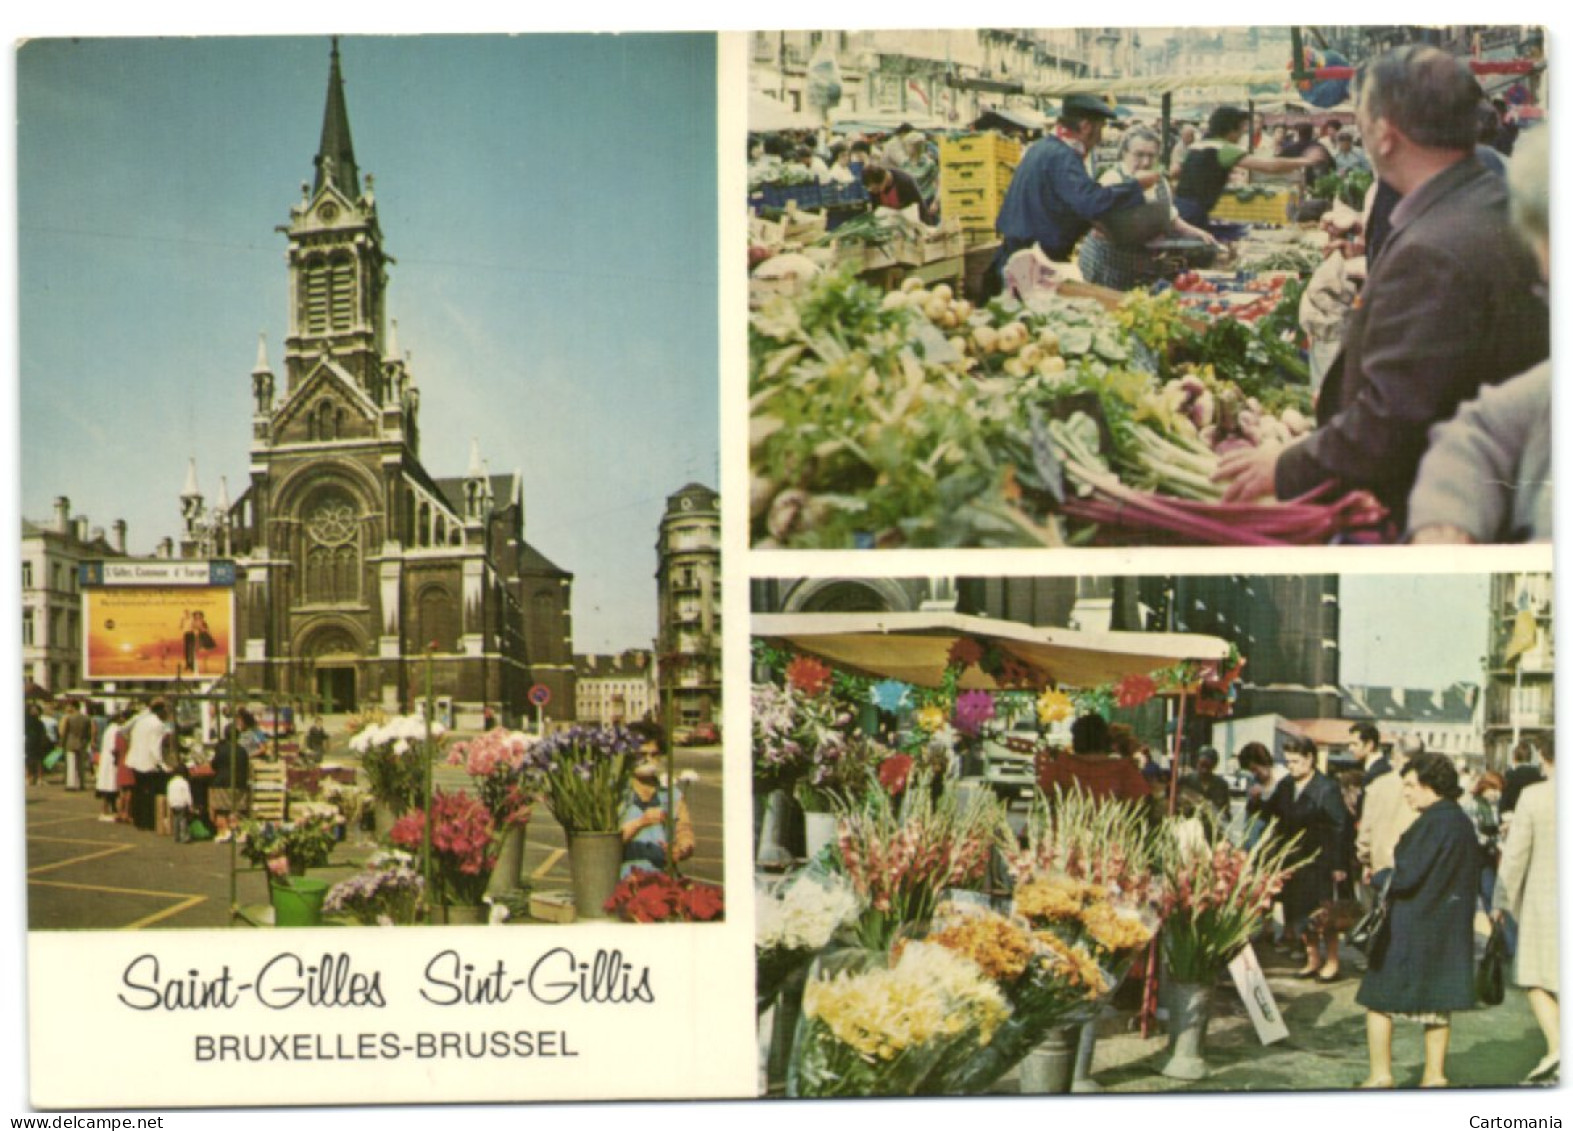 Saint-Gilles- Bruxelles - Marché Du Parvis Saint-Gilles - Eglise Saint-Gilles - St-Gilles - St-Gillis